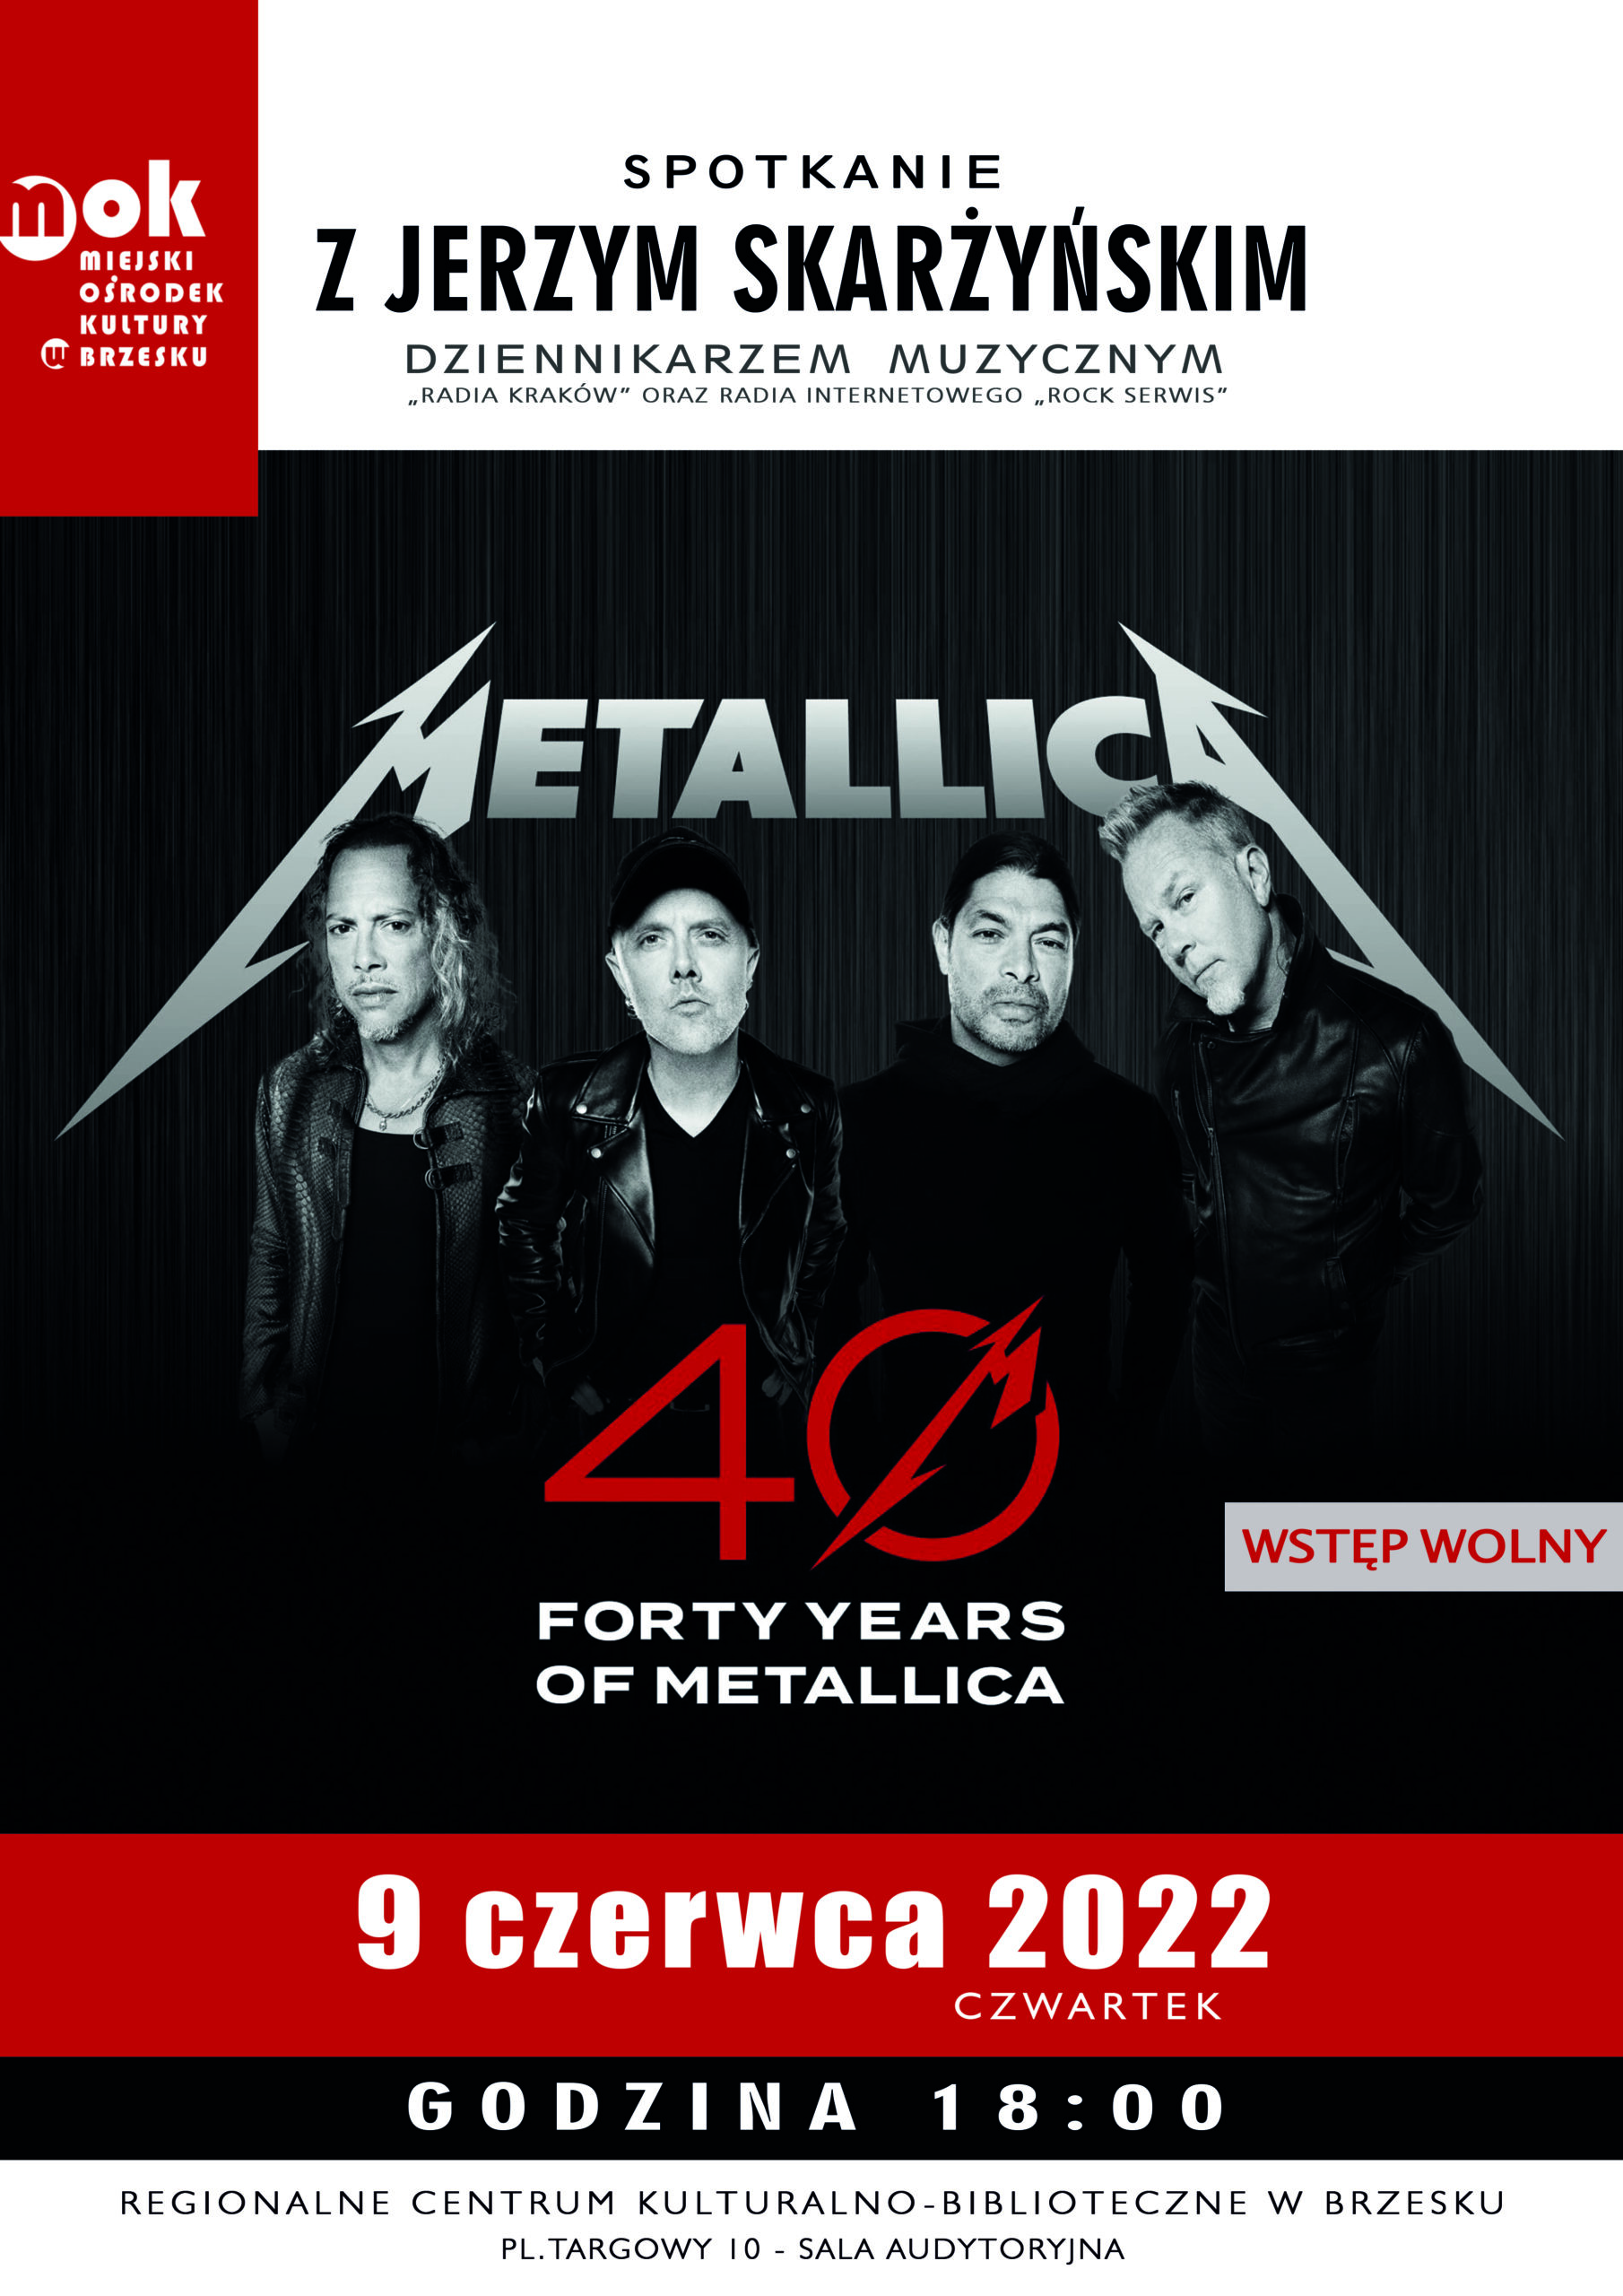 Spotkanie z Jerzym Skarżyńskim: 40 Years of Metallica – 9 czerwca 2022